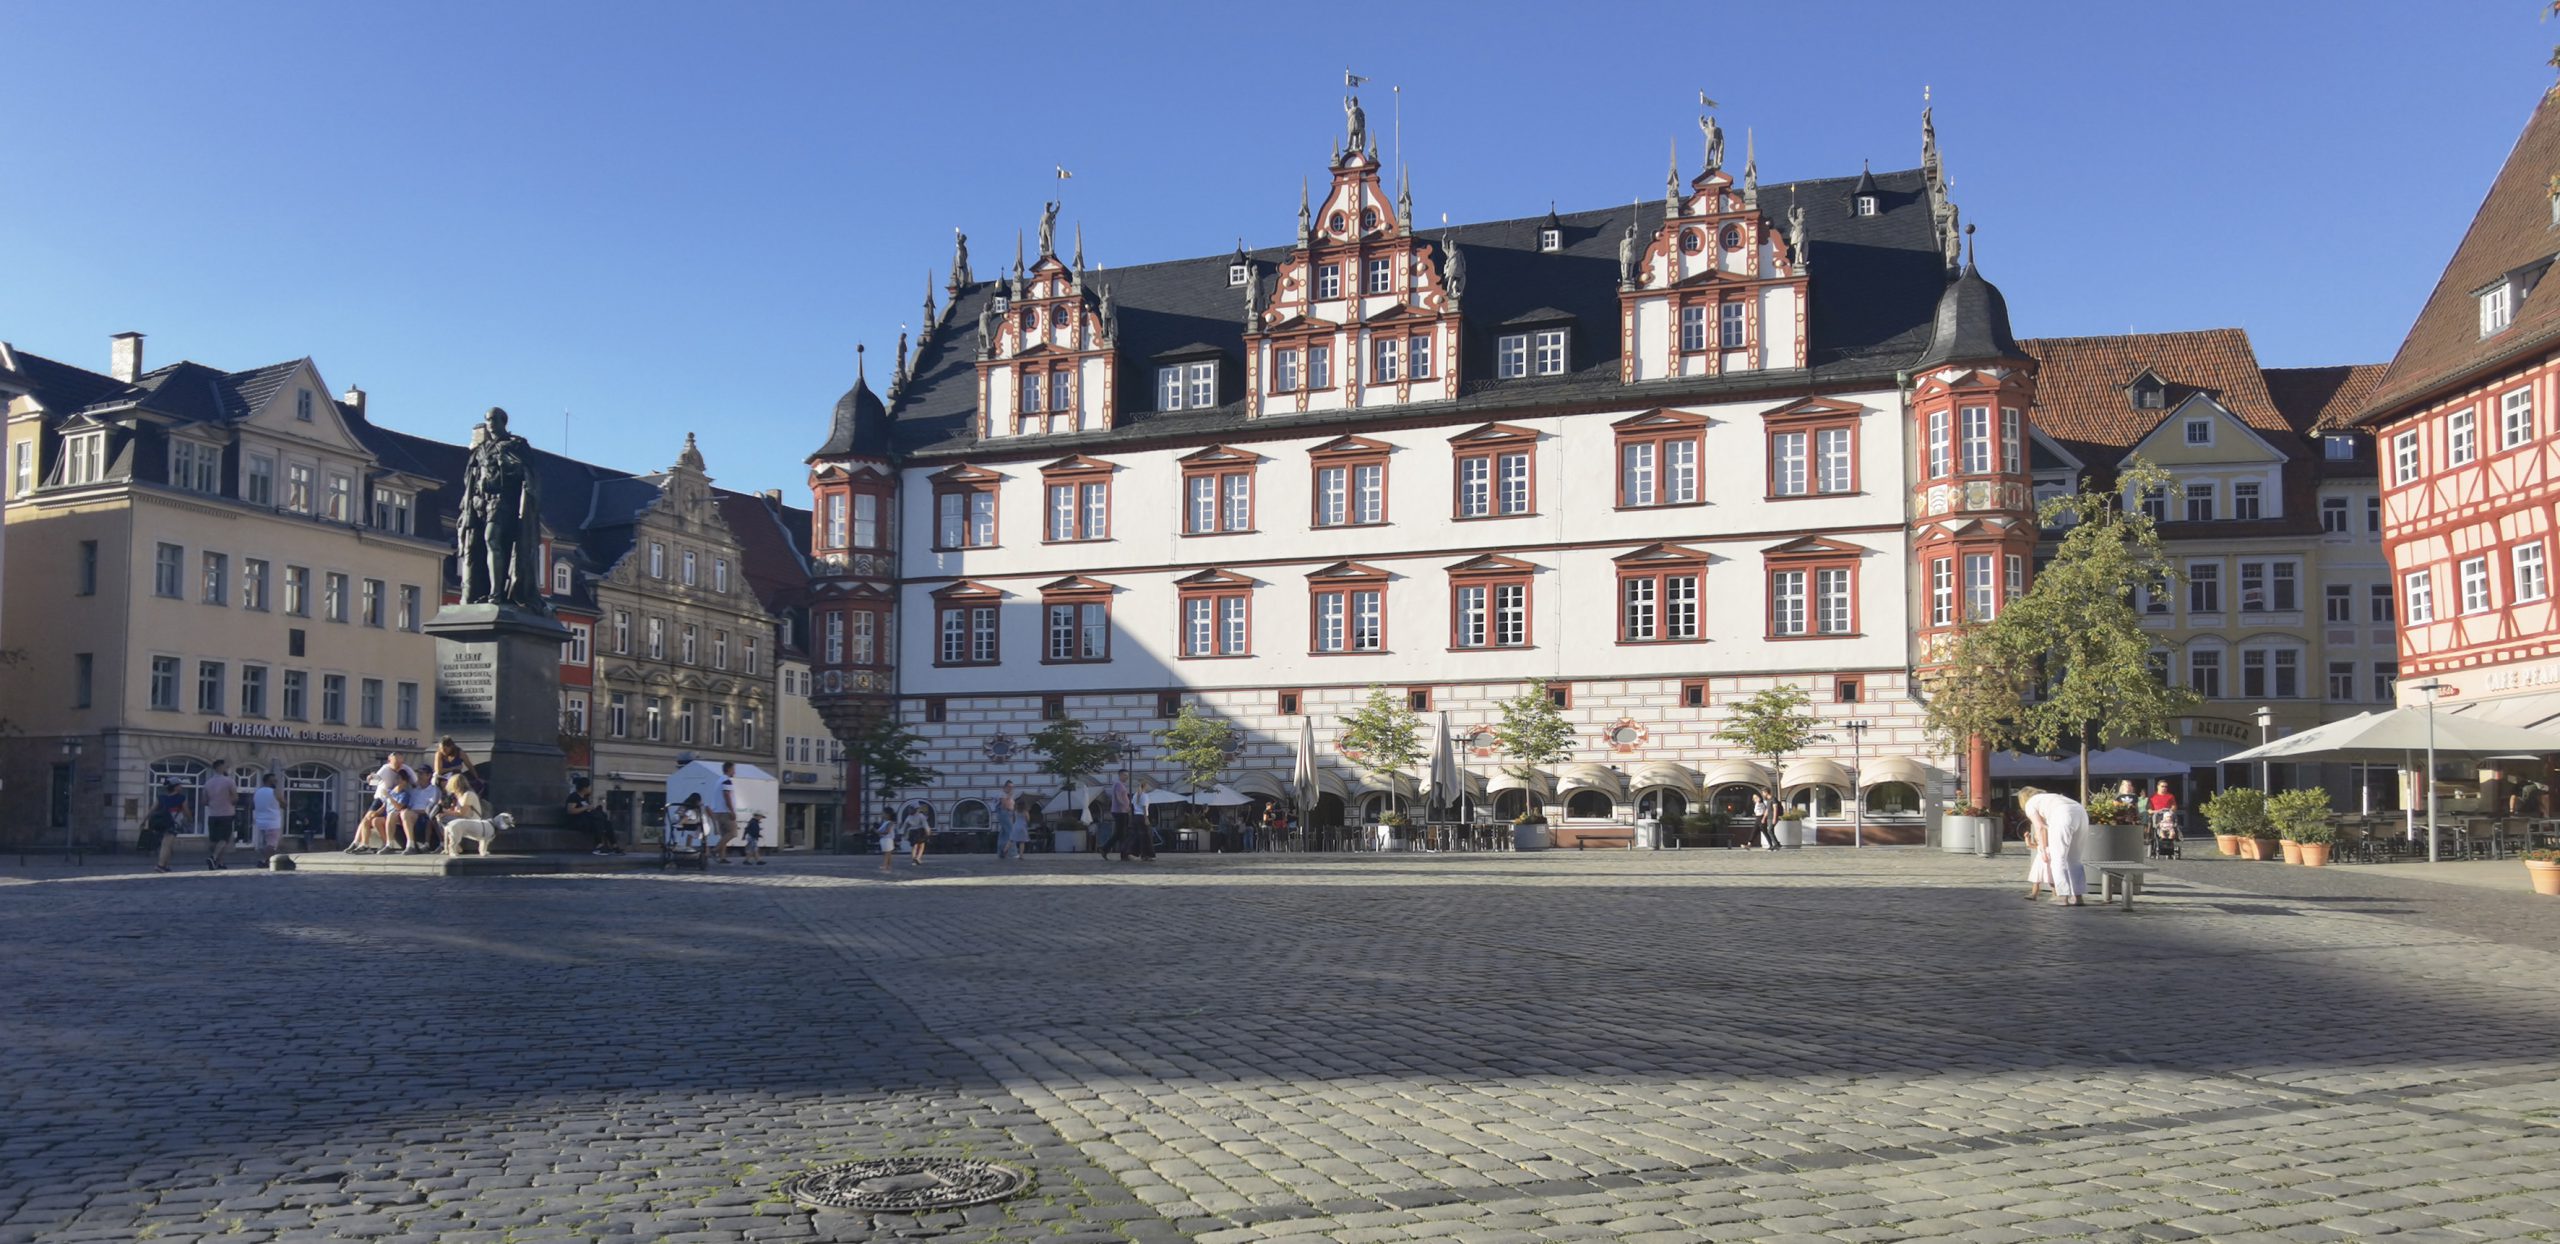 Coburg Markt Stadthaus with Statue of Prinz Albert